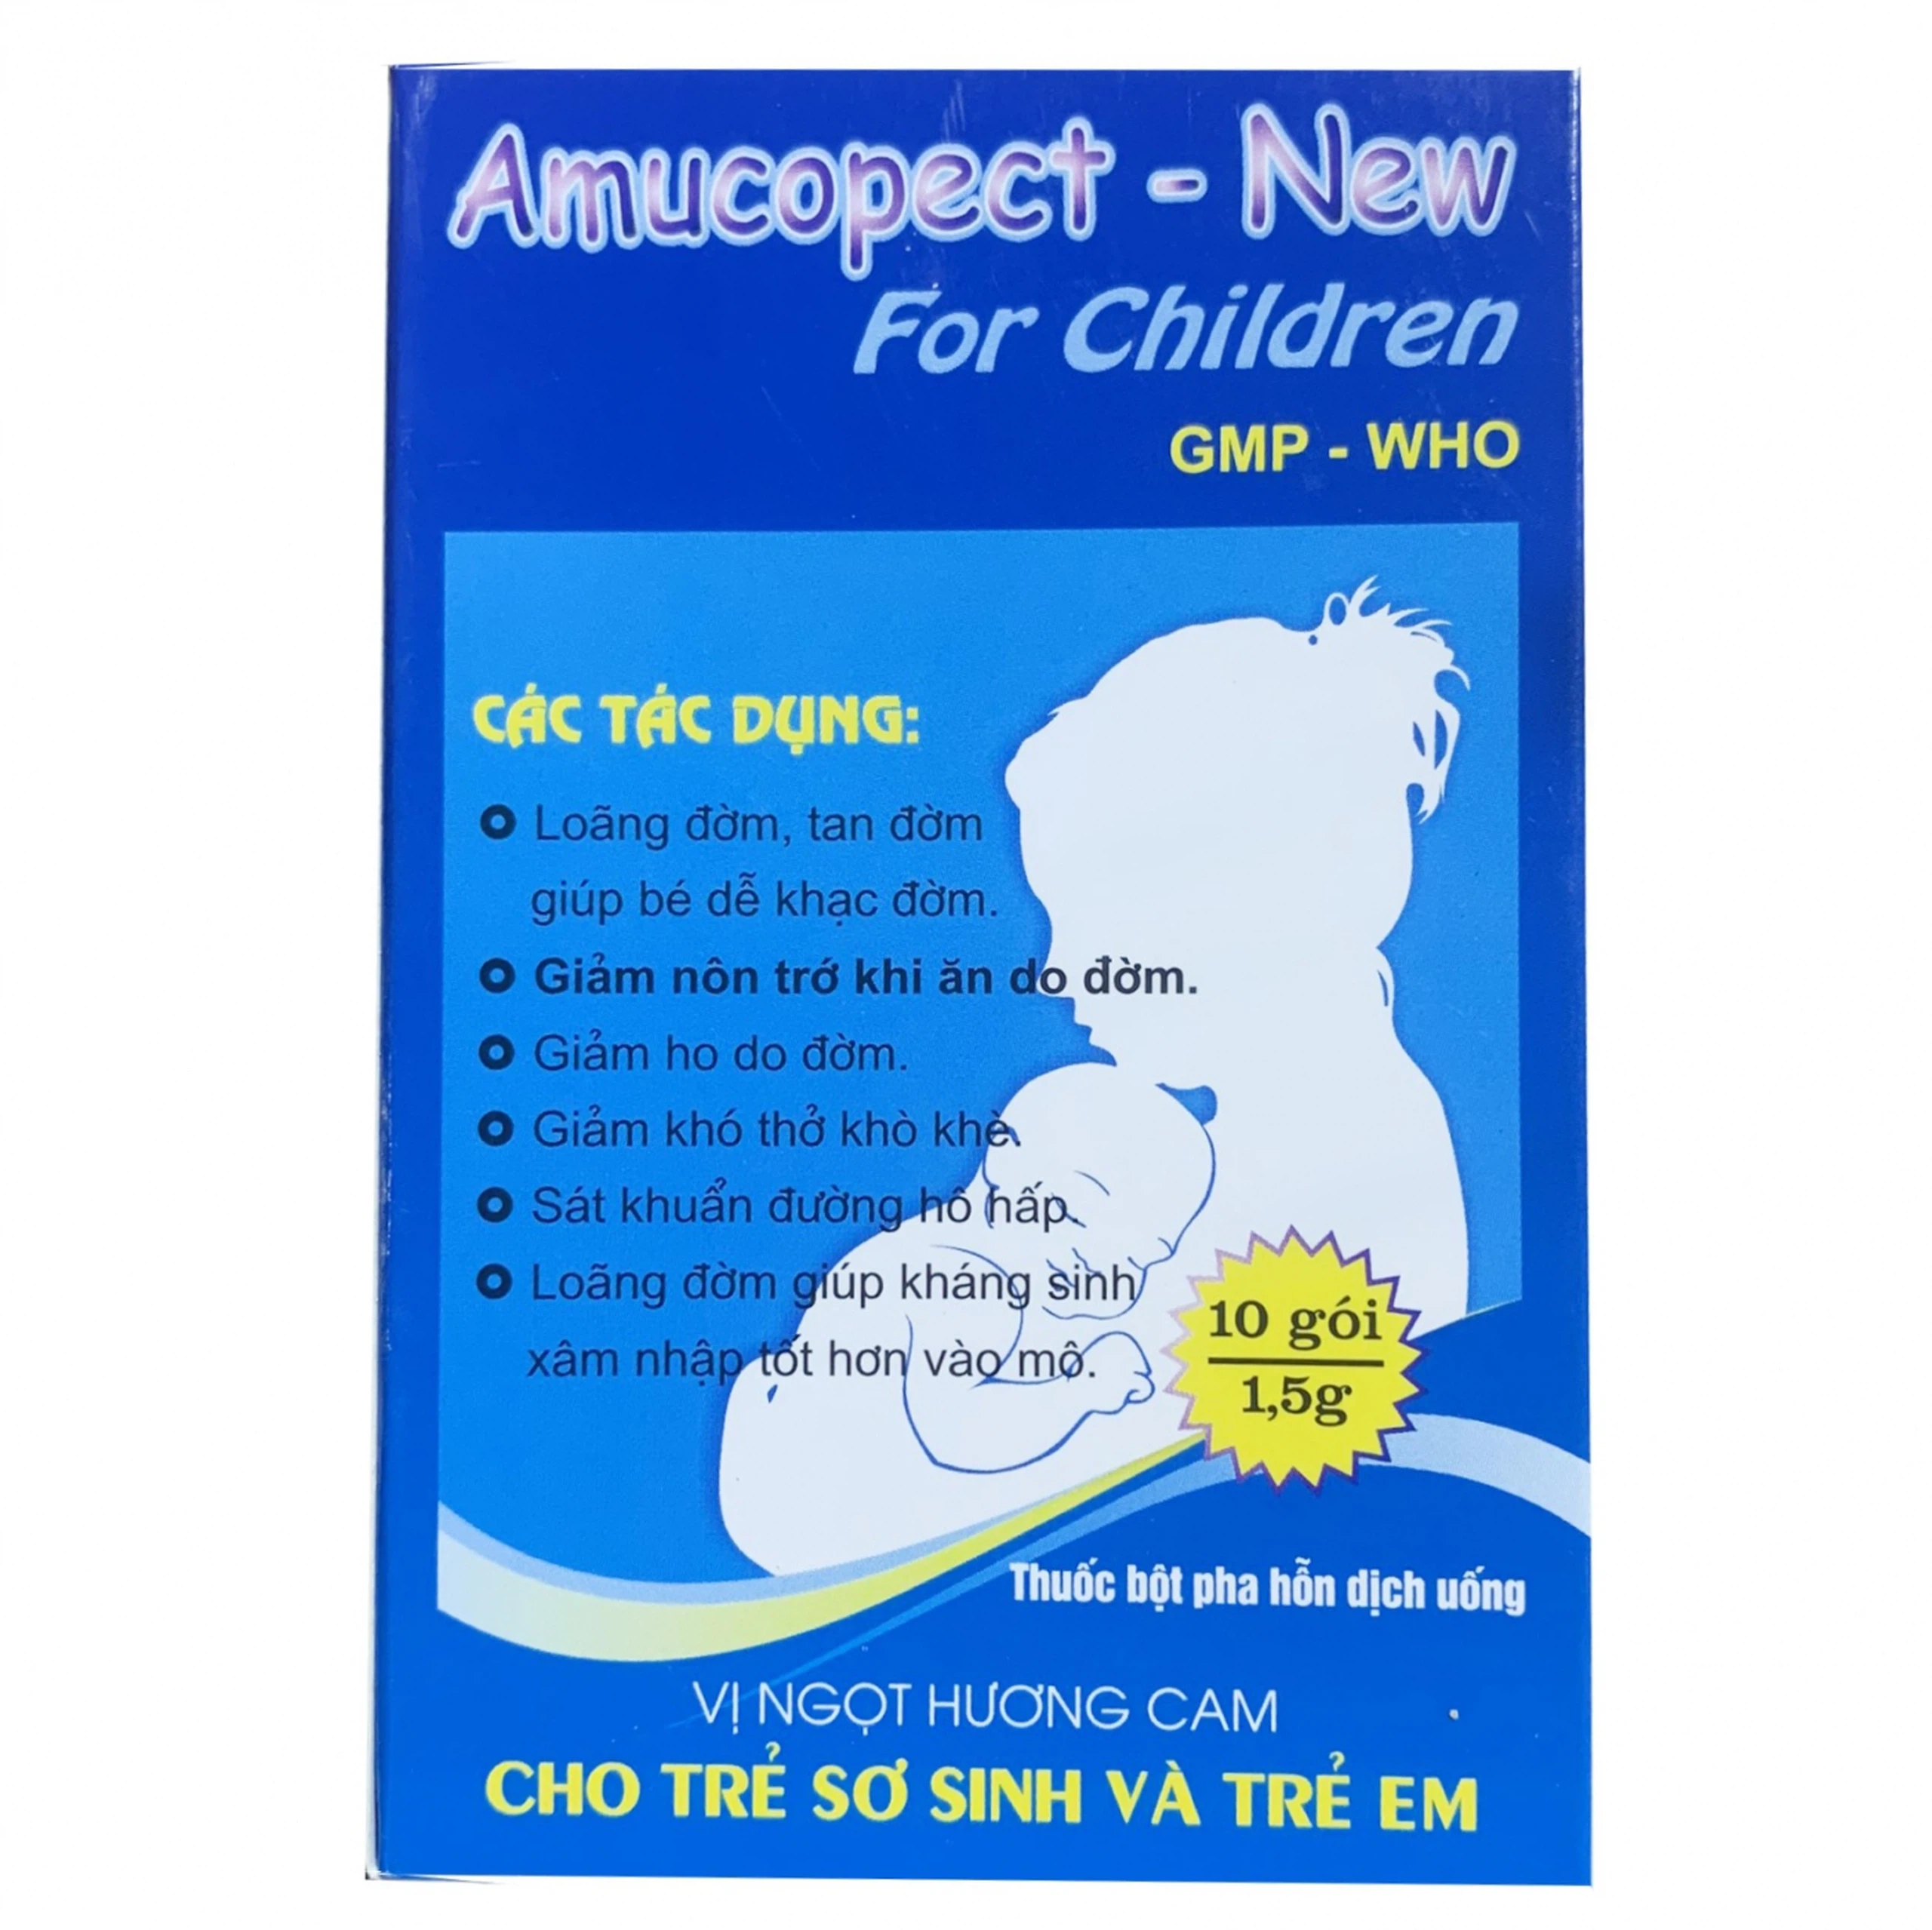 Thuốc bột Amucopect-New For Children Pharbaco hương cam giúp loãng đờm, tan đờm (10 gói x 1.5g)